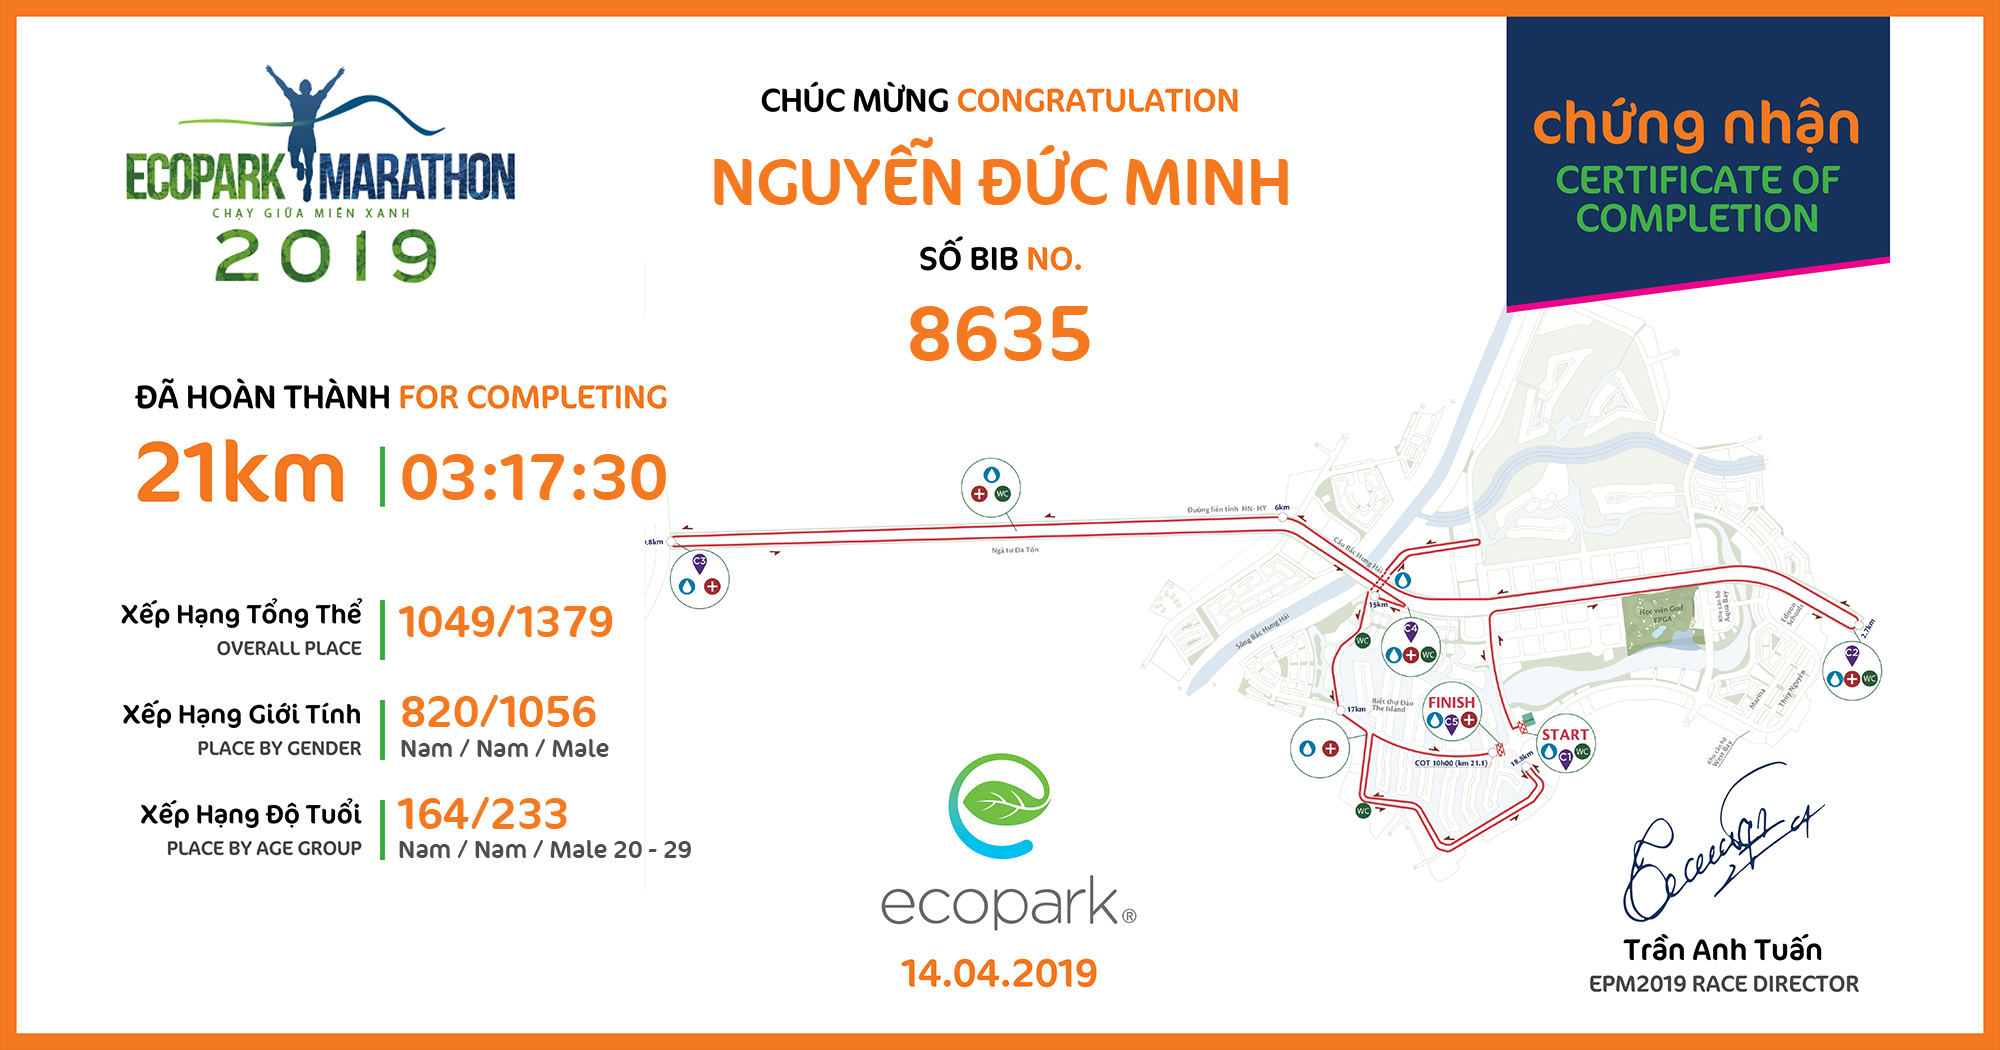 8635 - Nguyễn Đức Minh